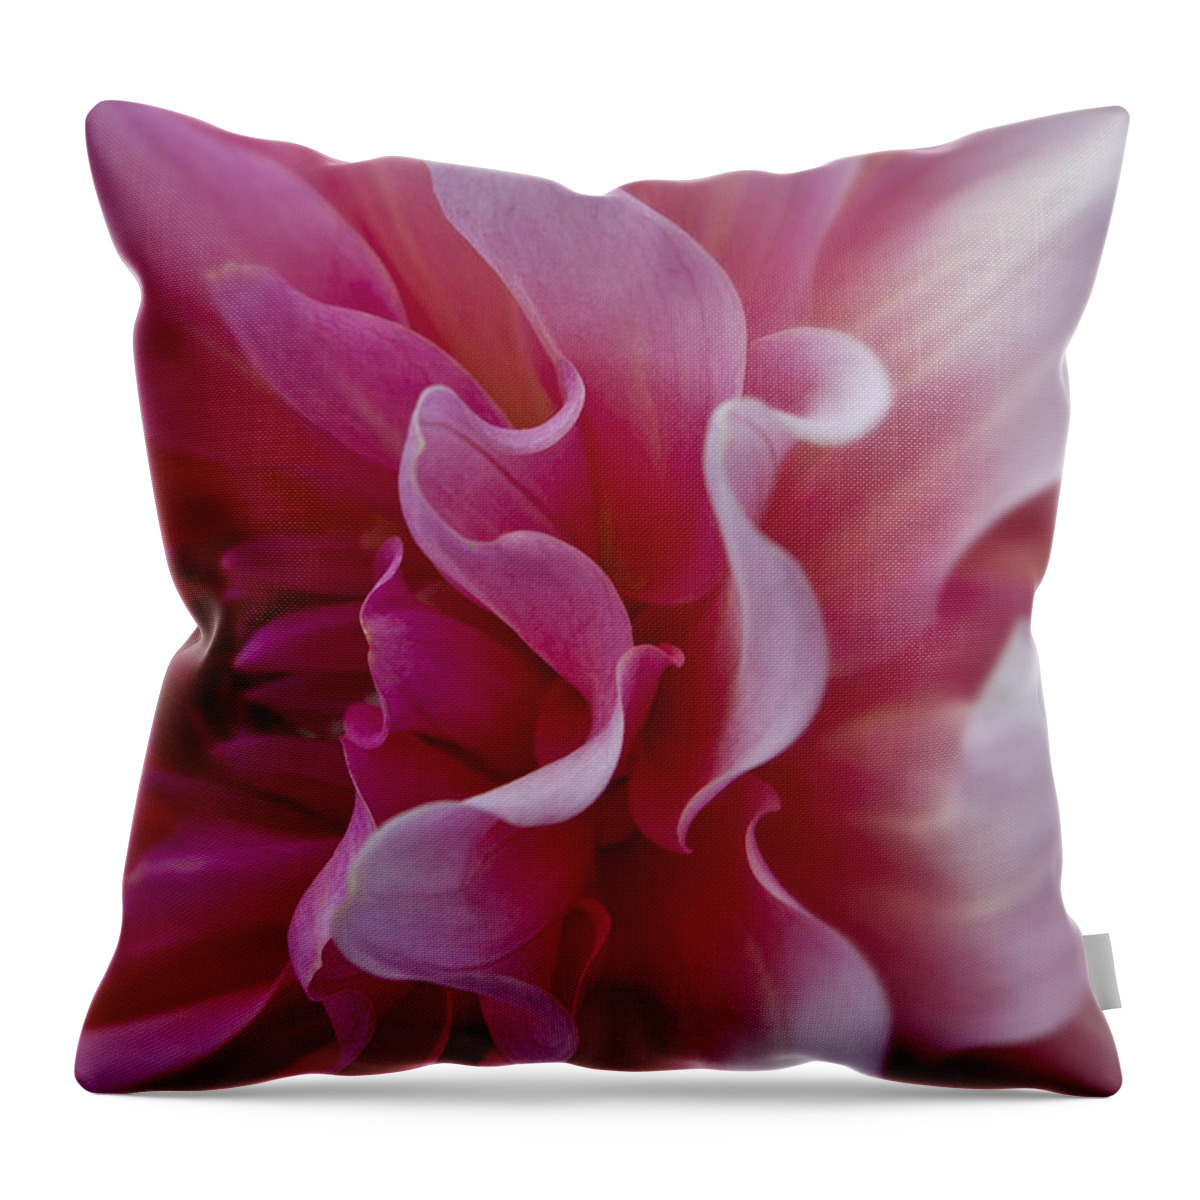 Pink Dahlia Throw Pillow featuring the photograph Pink Dahlia #2 by Ken Barrett